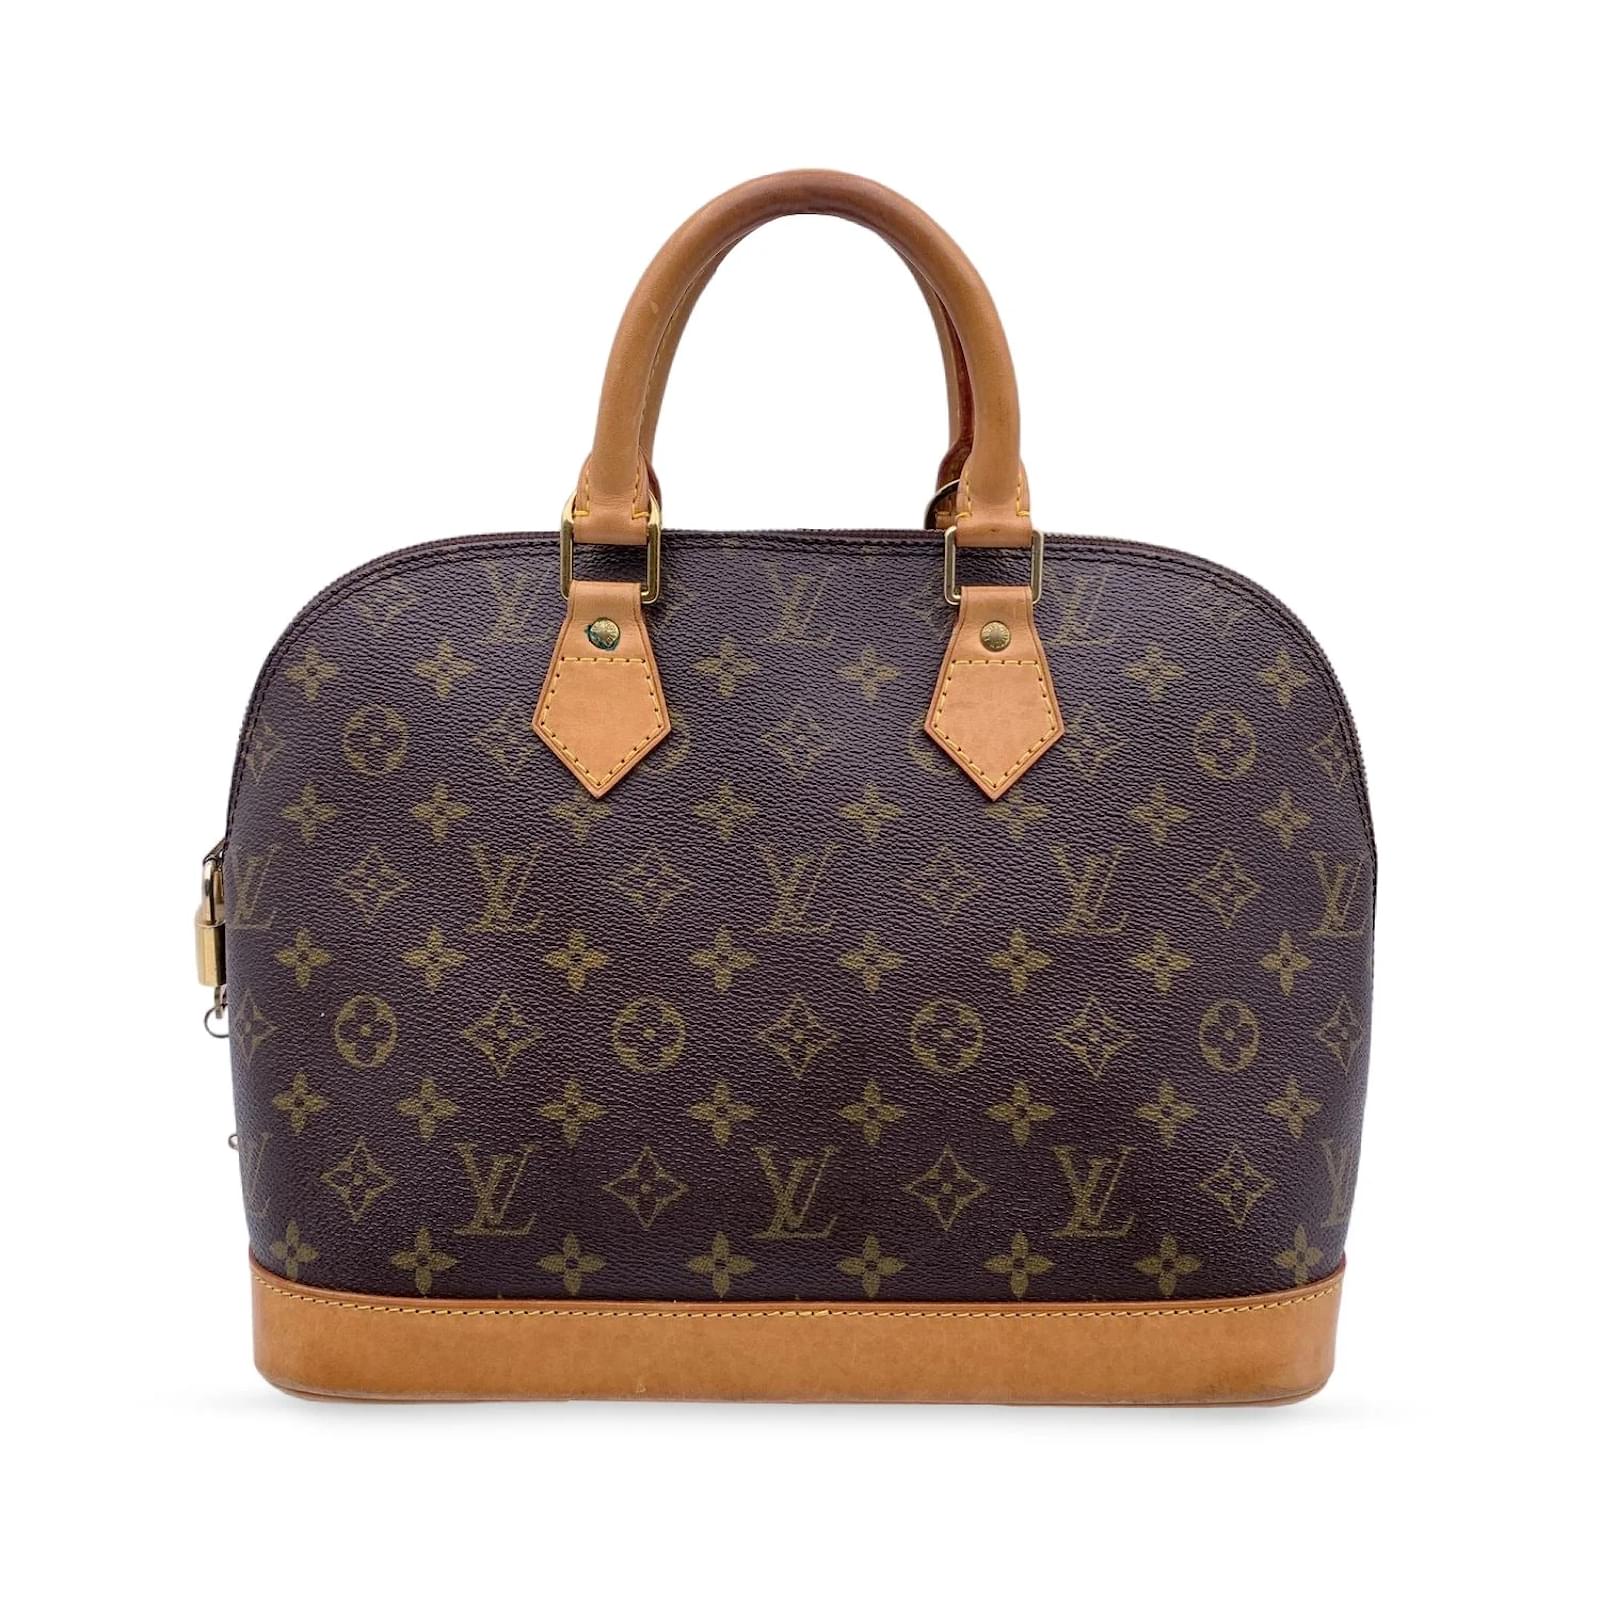 Handbags Louis Vuitton Louis Vuitton Handbag Vintage Alma